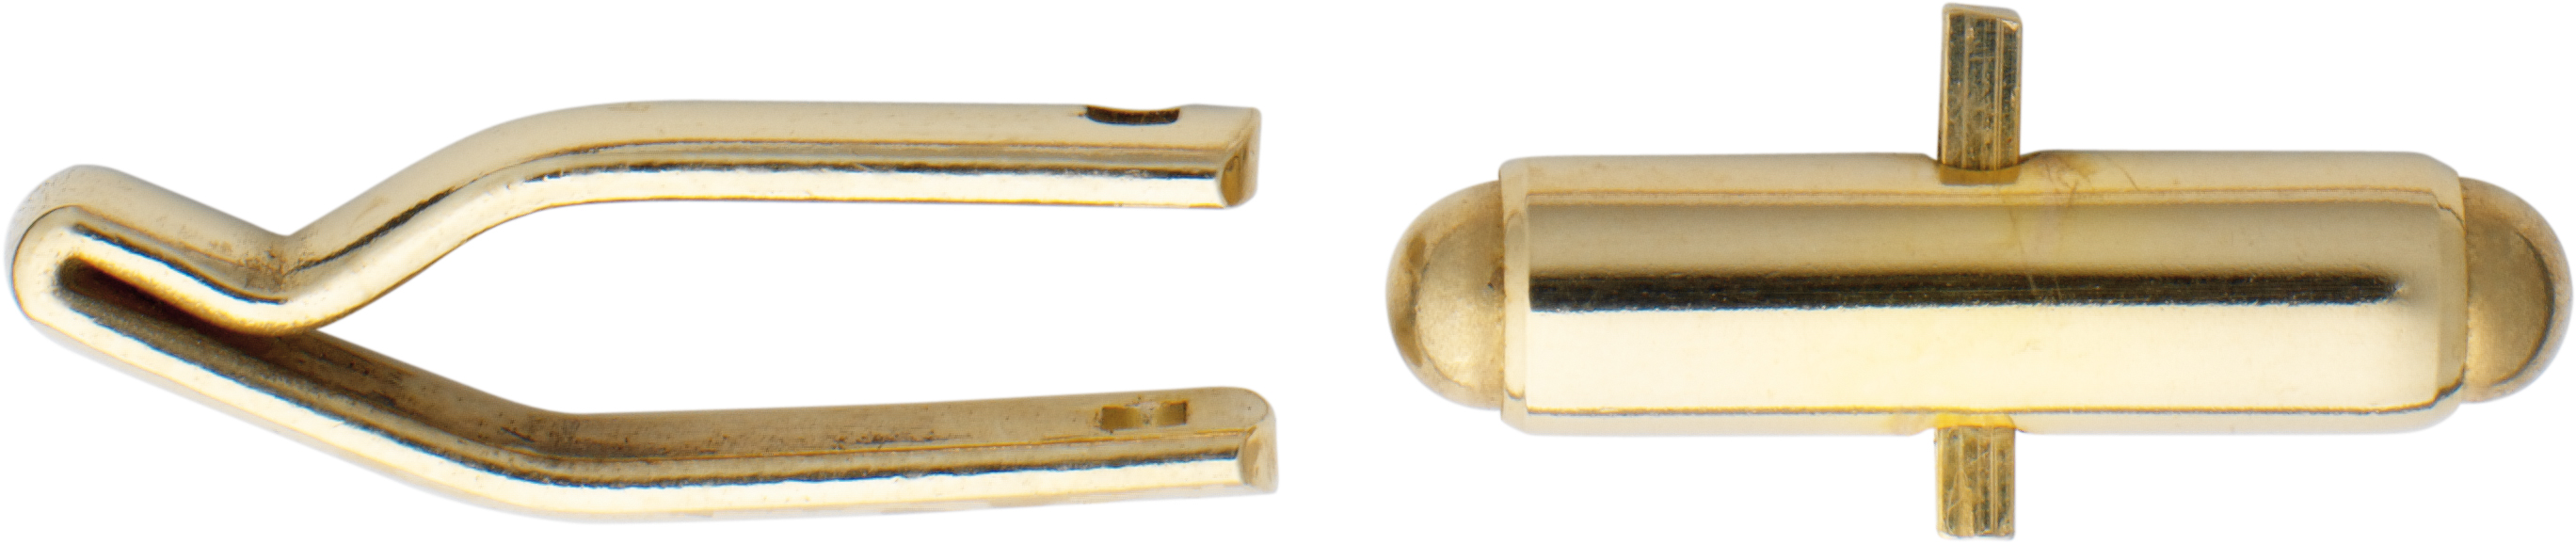 Cuff link mechanism gold 750/-Gg